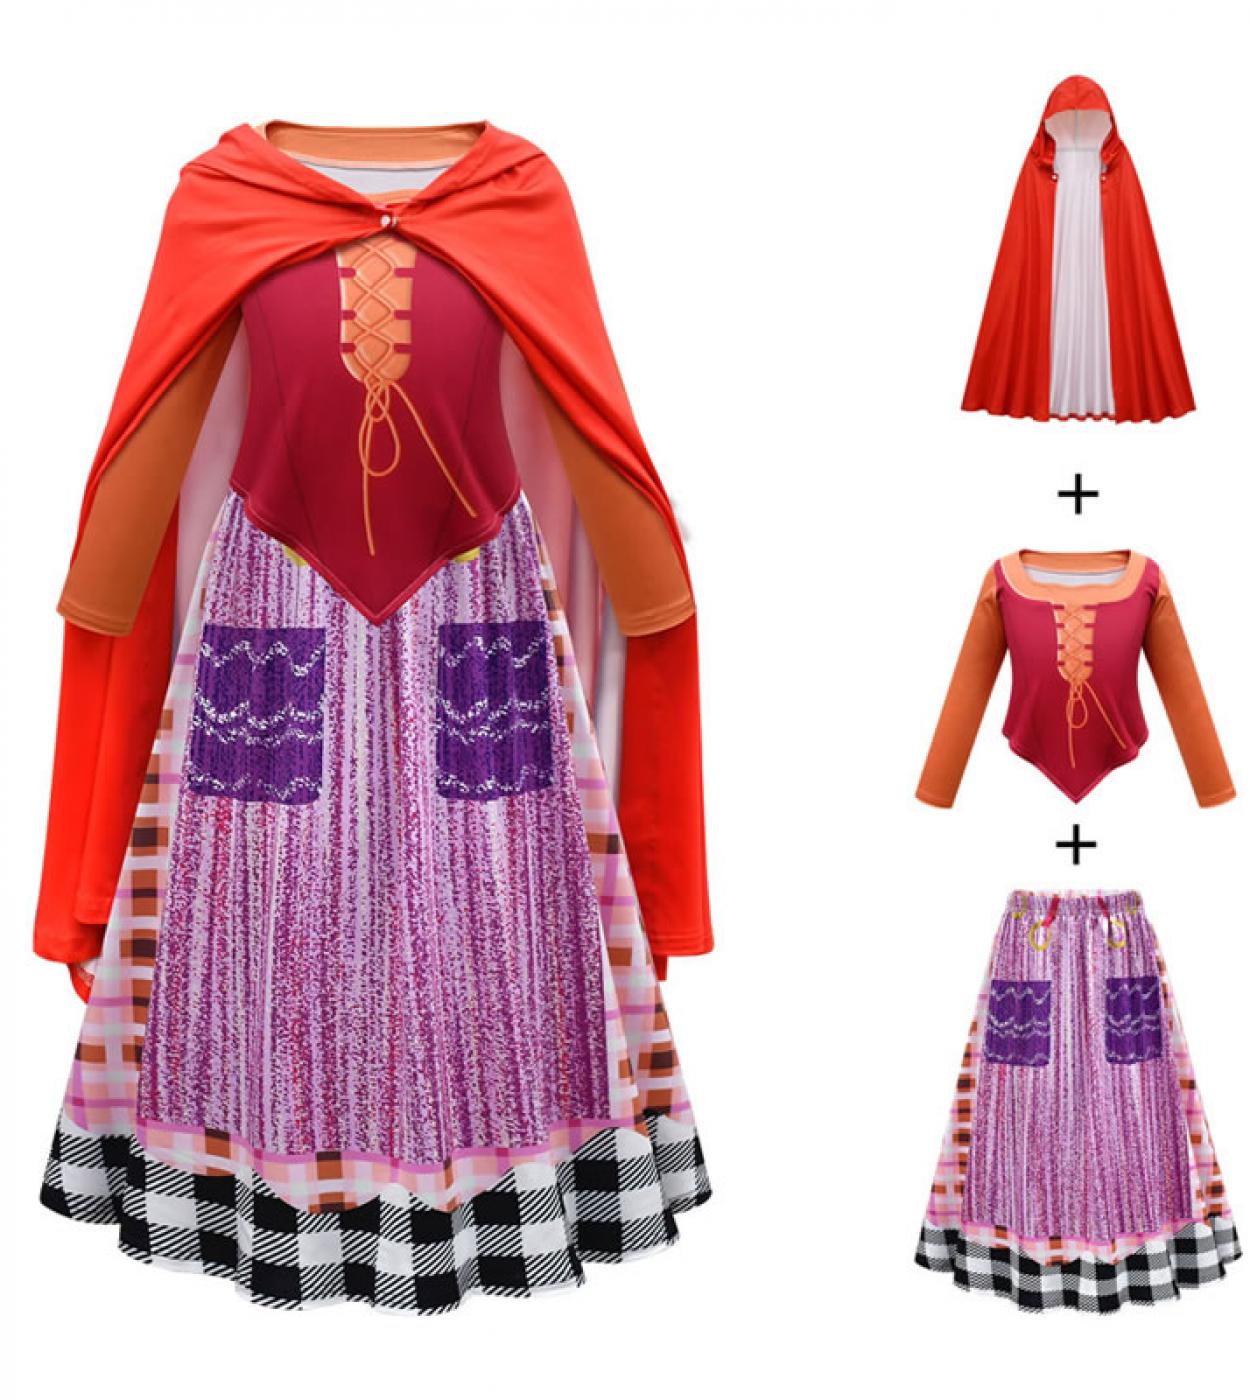 Halloween Hocus Pocus 2 disfraz de Cosplay para chica adolescente vestido conjunto festivo niño Vestplaid falda reloj traje chic